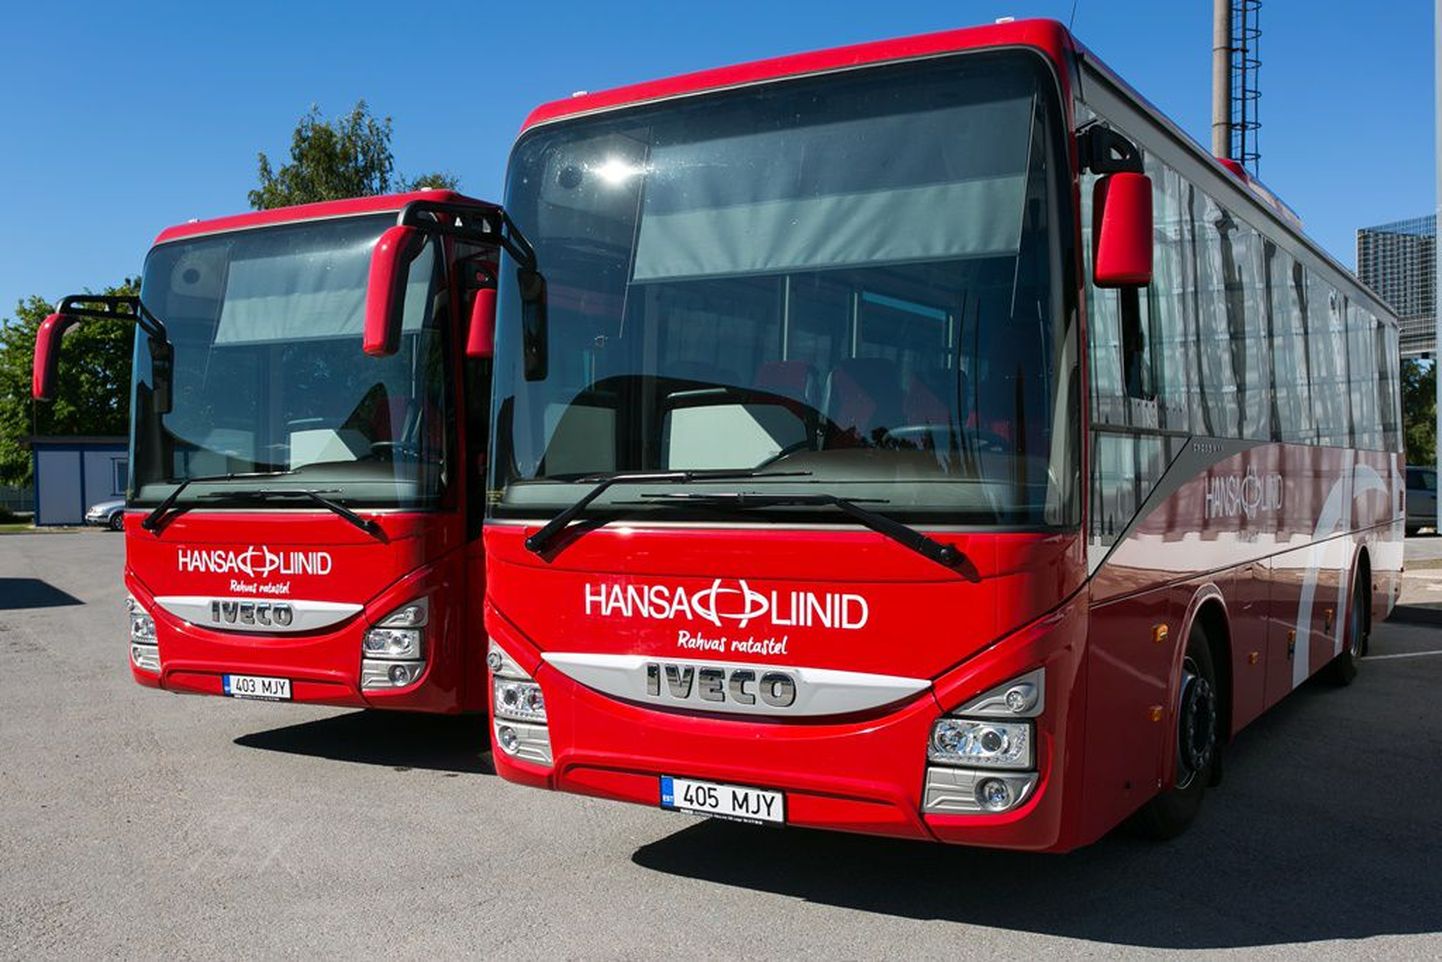 Автобусы Hansa Bussiliinid. Иллюстративное фото.